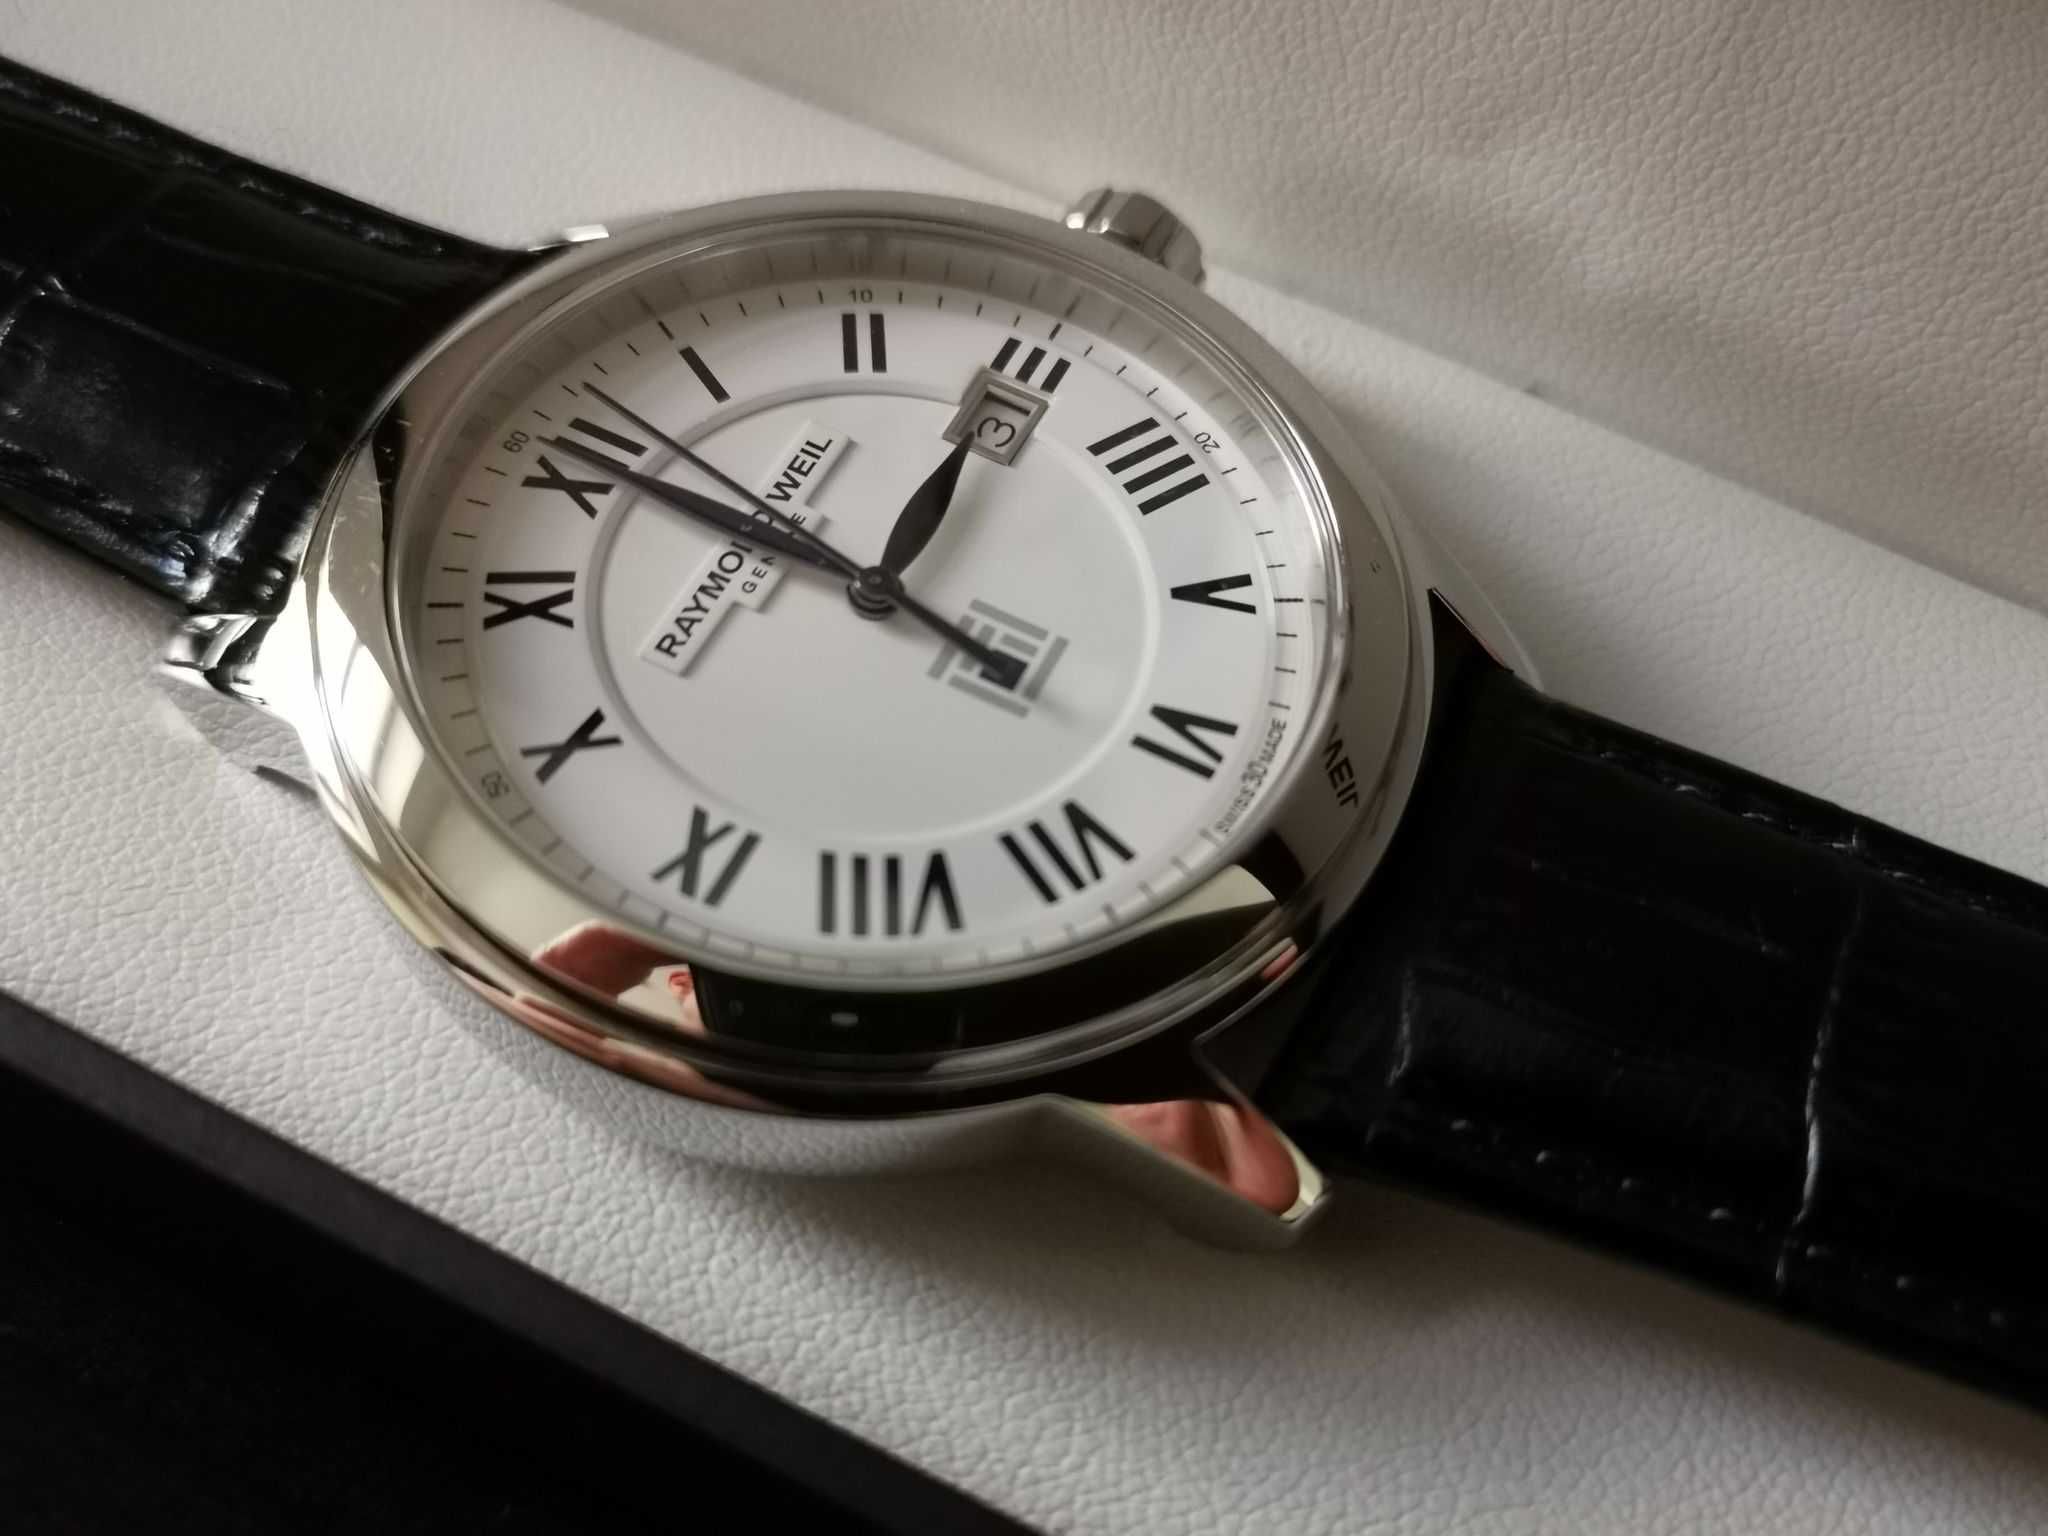 Zegarek męski Raymond Weil  5578 nowy, skórzany pasek.